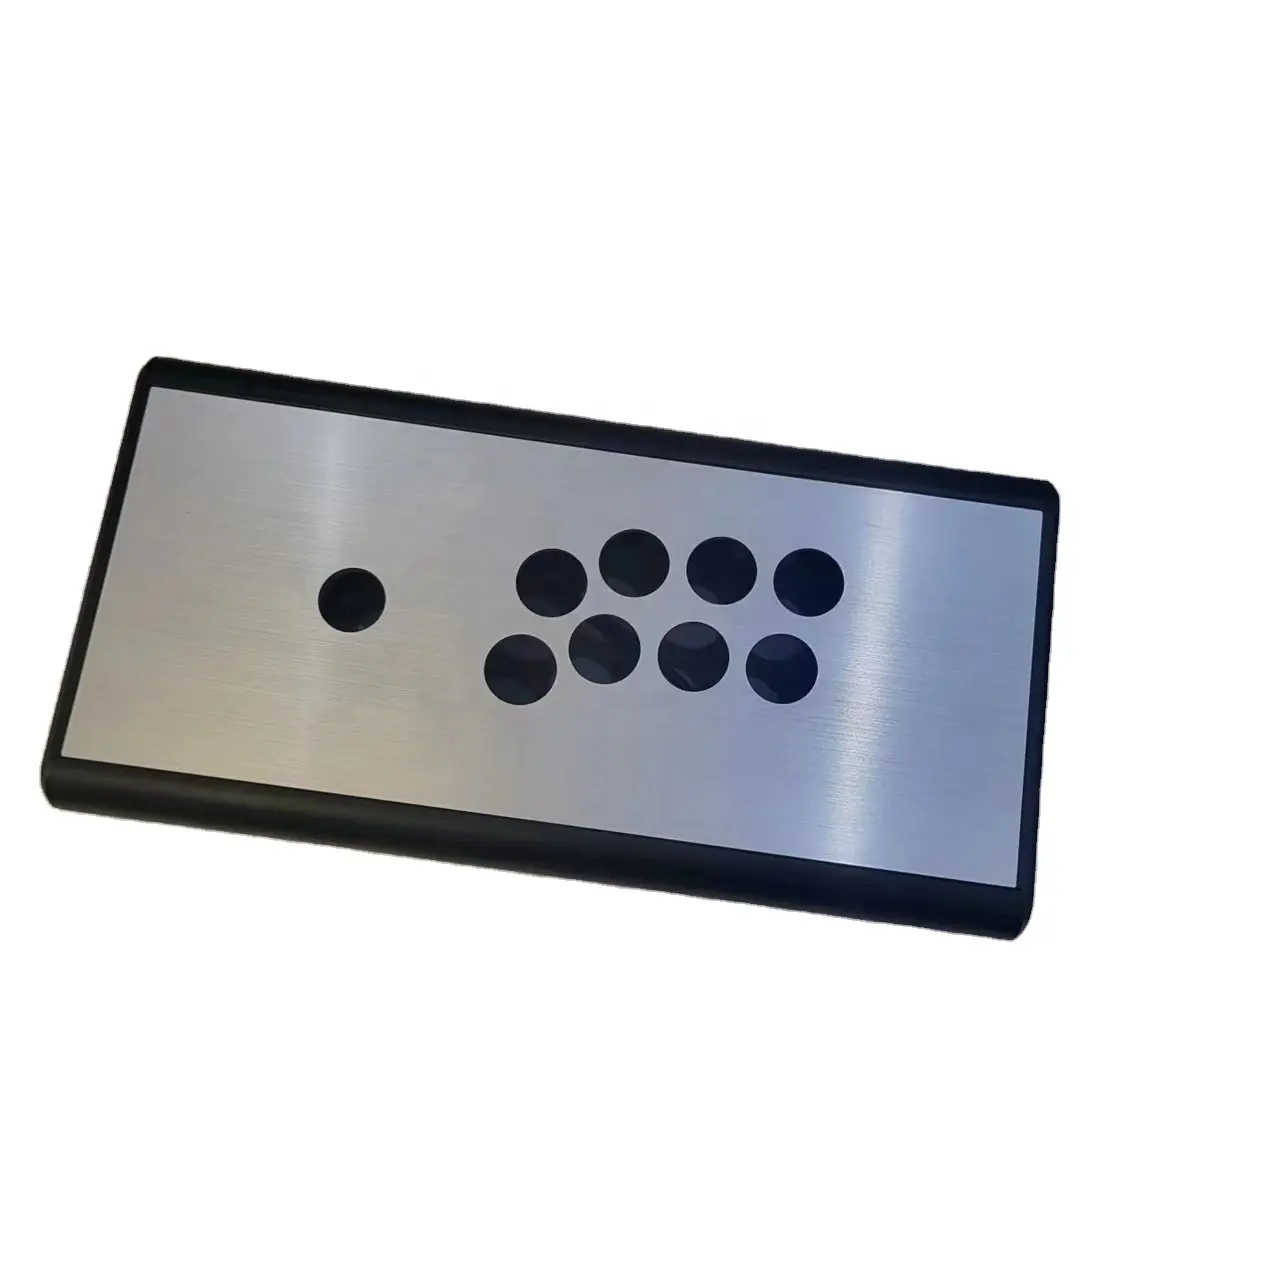 Panel cepillado de Metal DIY kit juego de arcade joystick caja personalización Eimpty hitbox Arcade Box Hitbox controlador kit piezas